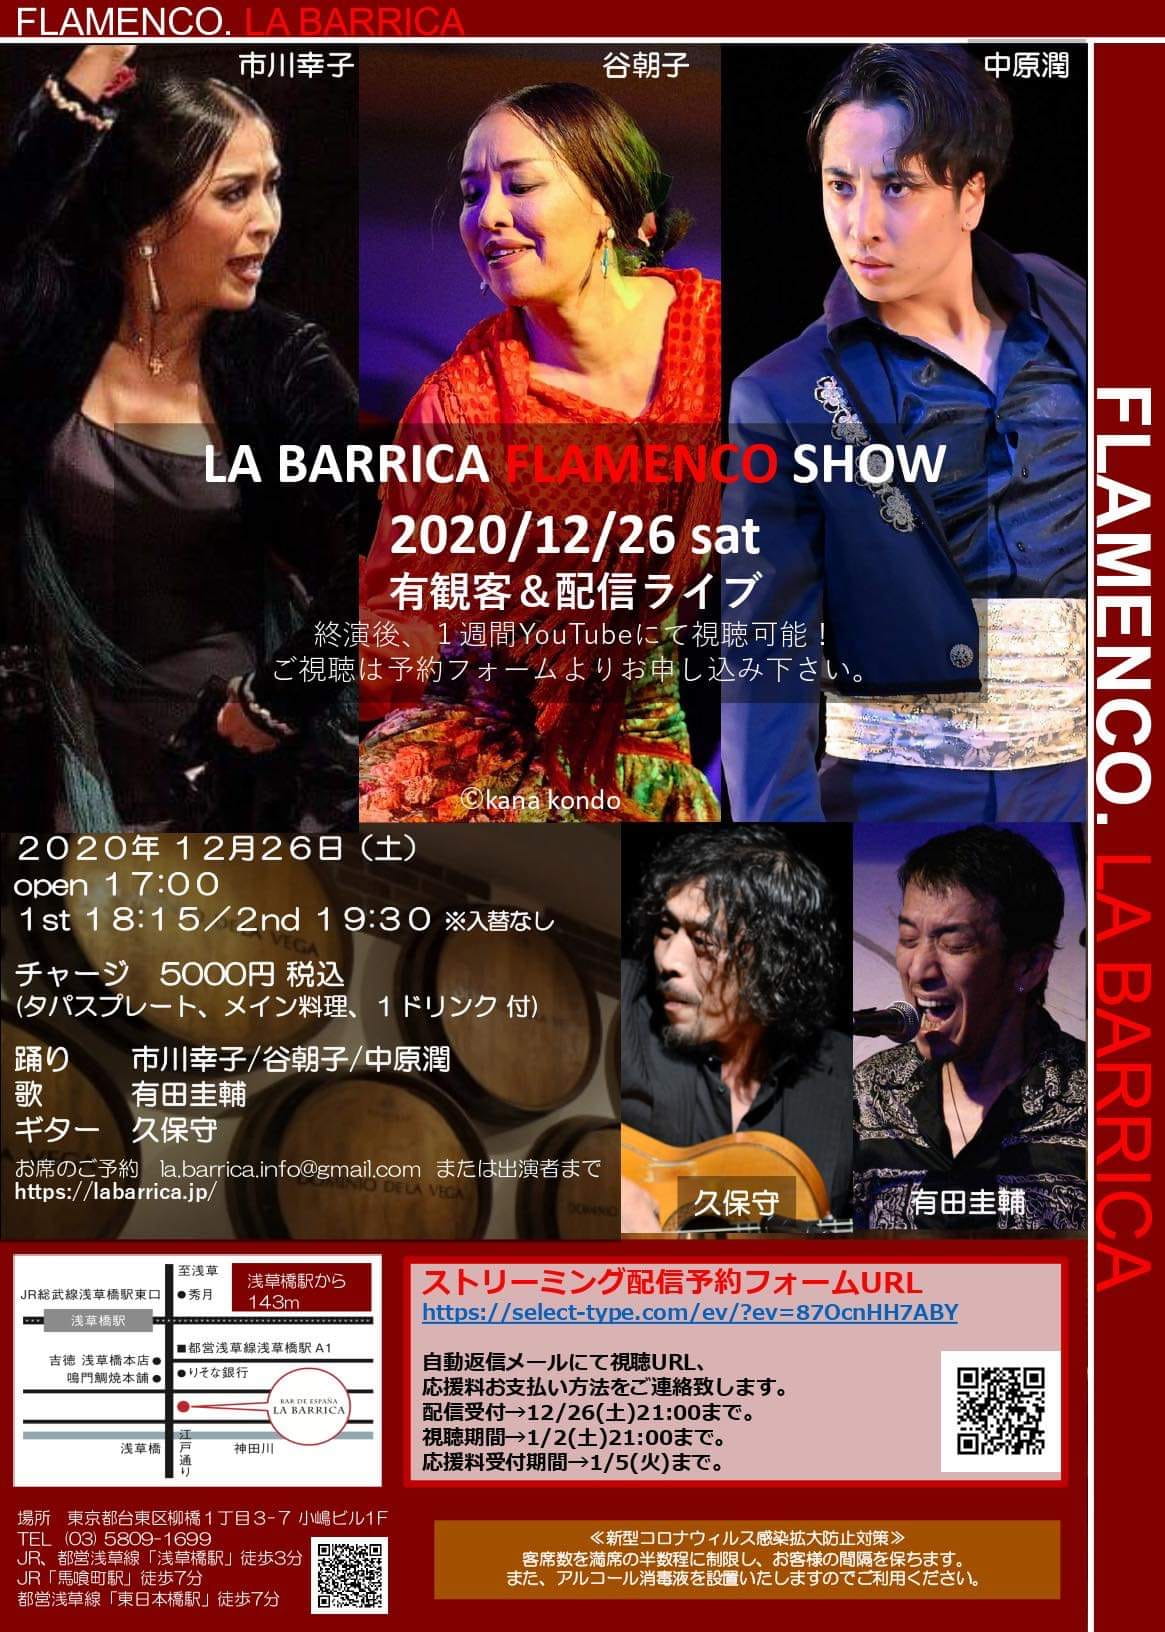 Flamenco LIVE LA BARRICA FLAMENCO SHOW